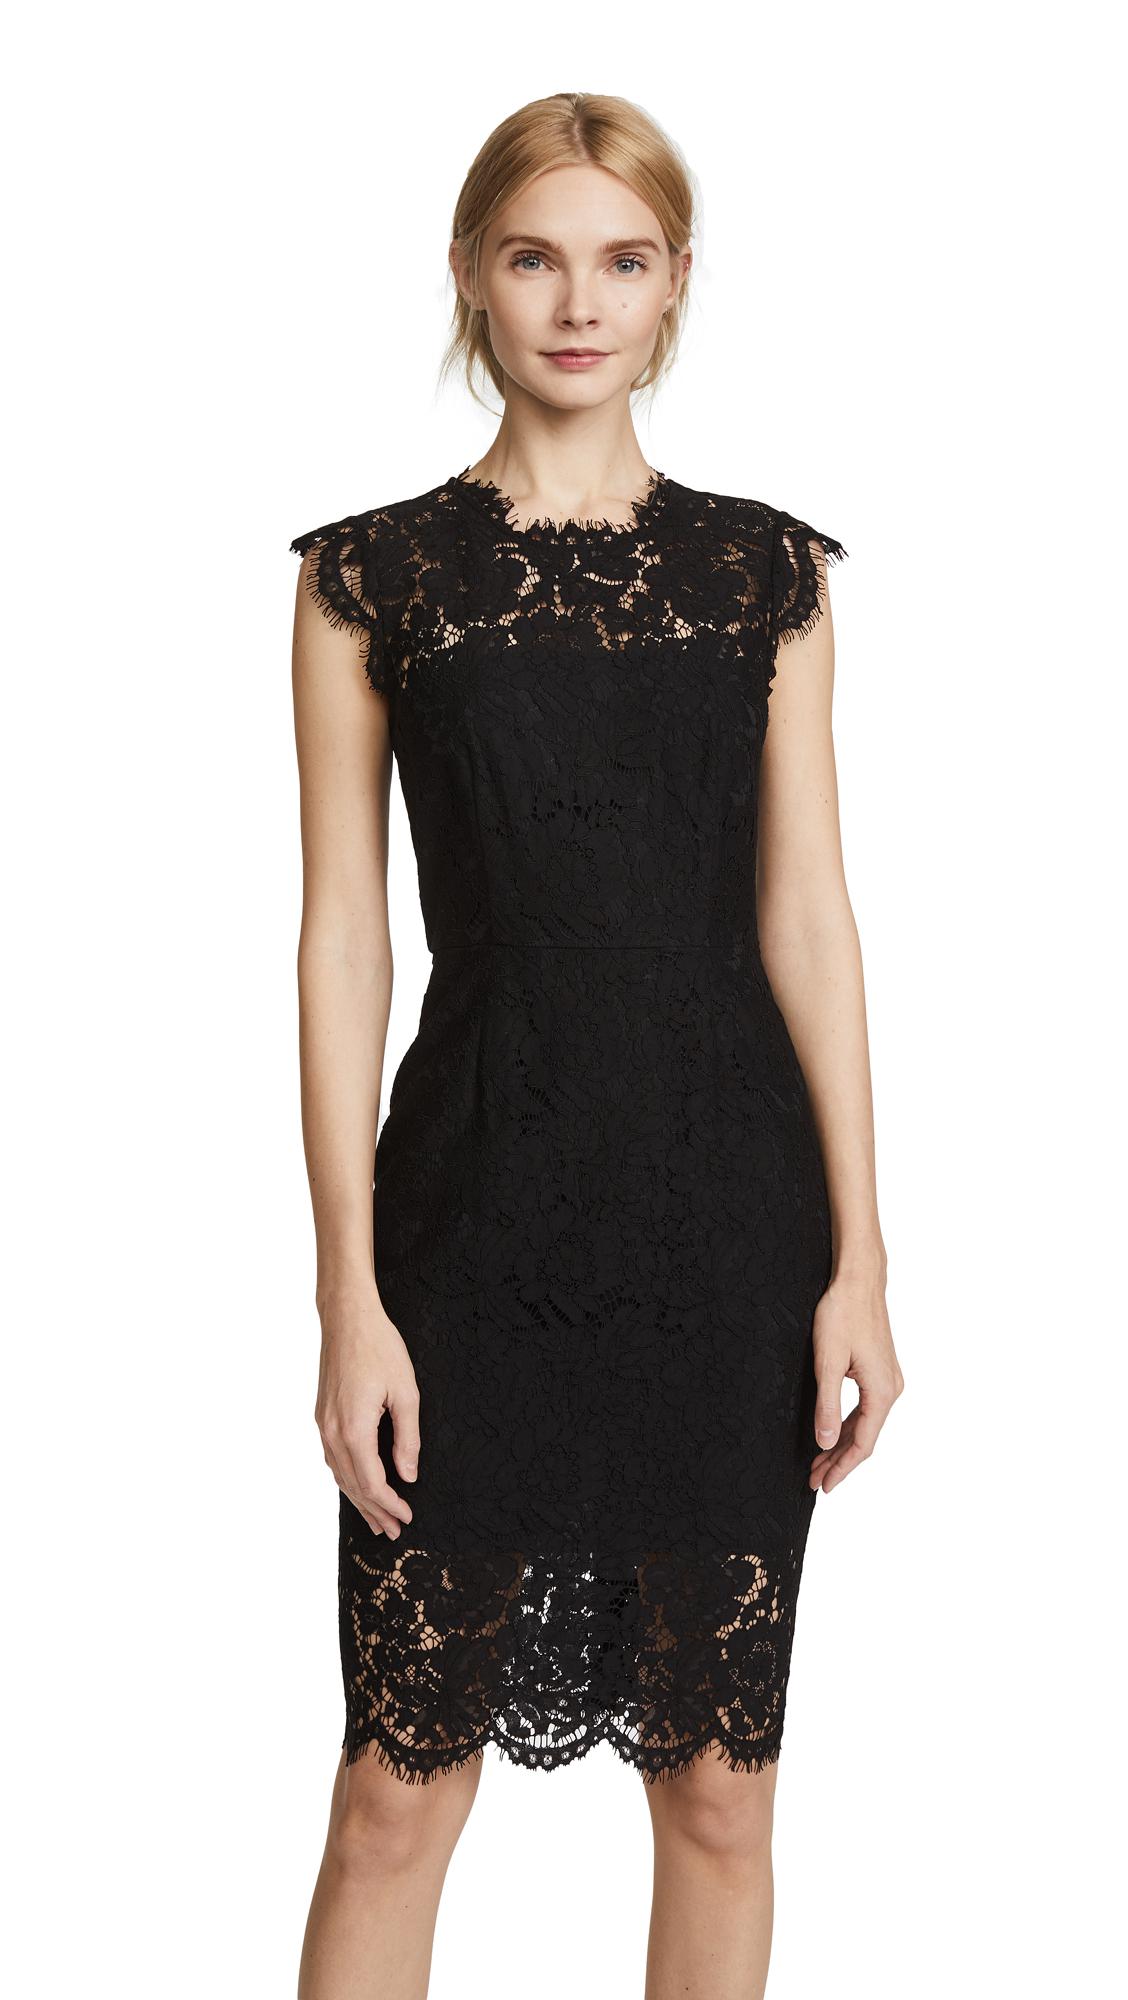 rachel zoe black lace dress